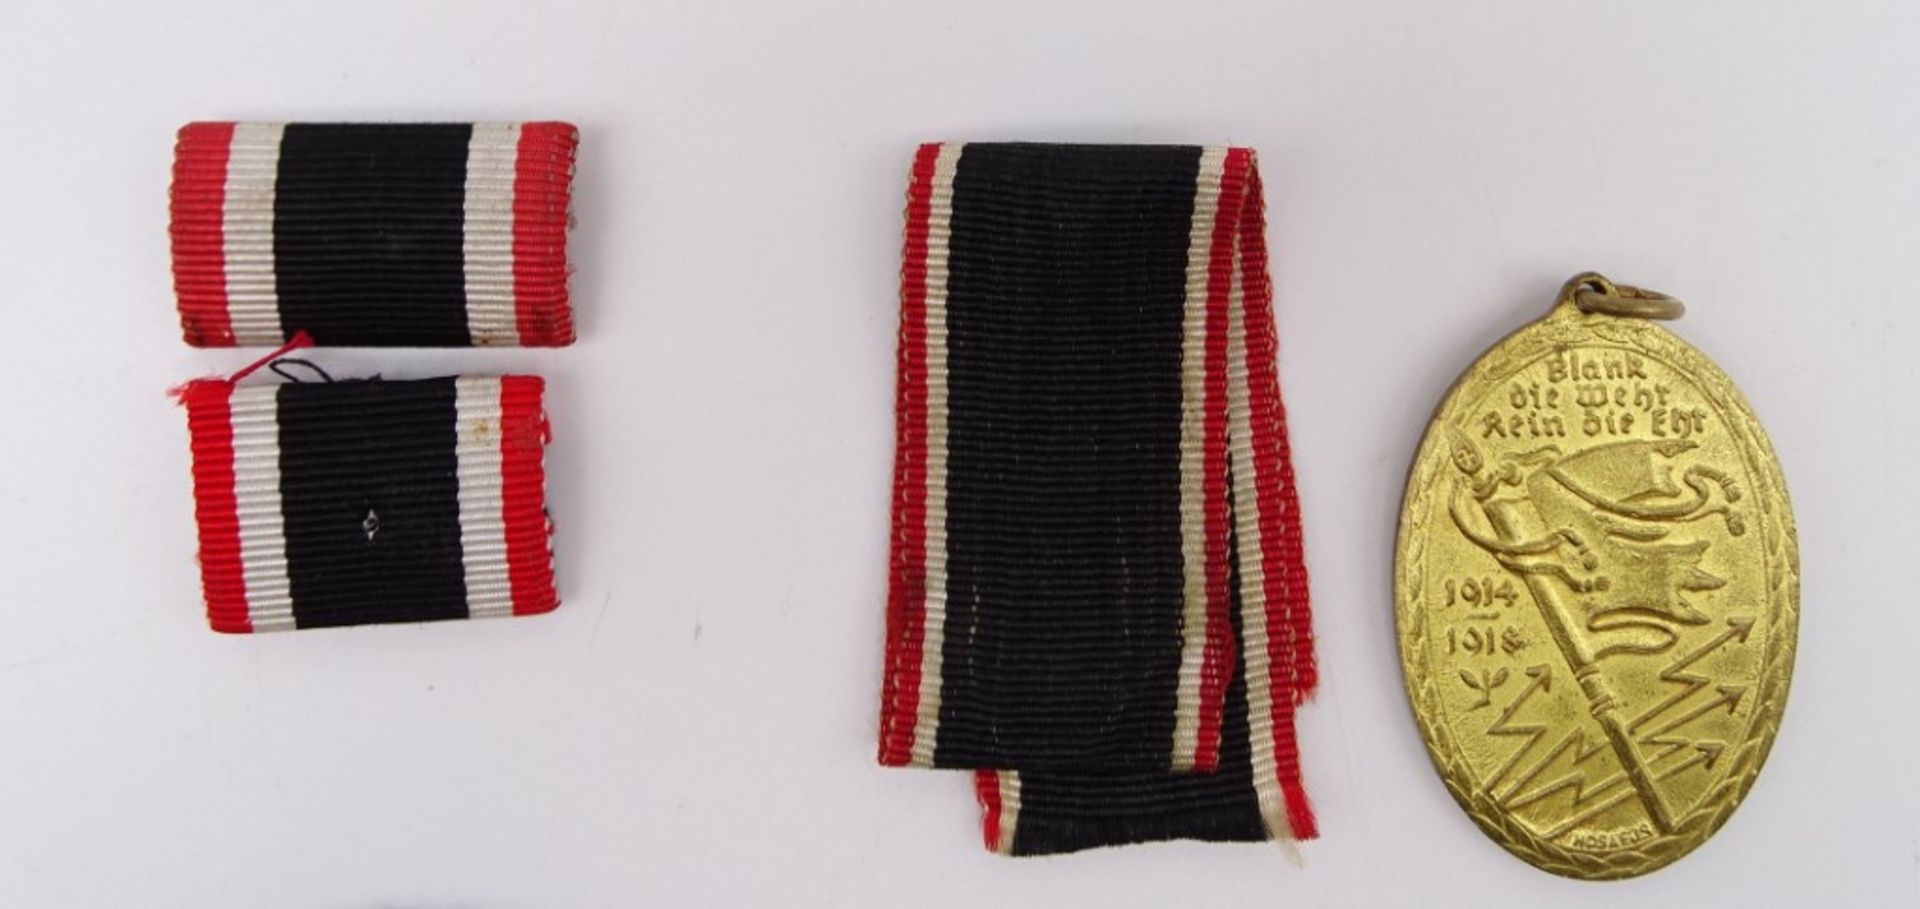 5 Abzeichen/Medaillen, Kyffhäuserbund, 2 Feldspangen, Kriegsverdienstkreuz, Schützenabzeichen? - Bild 3 aus 4